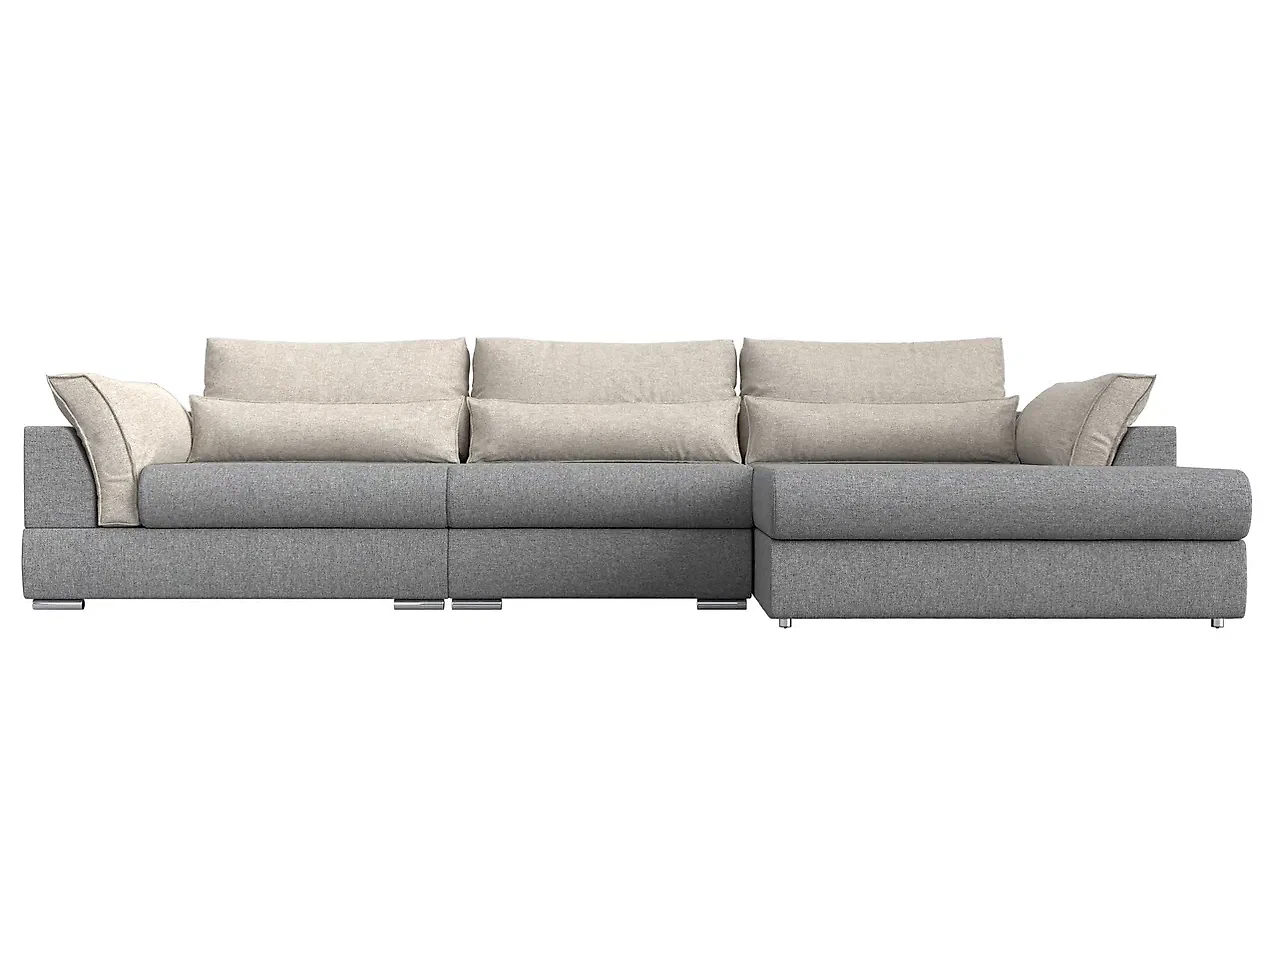  угловой диван из рогожки Пекин Лонг Кантри Дизайн 8